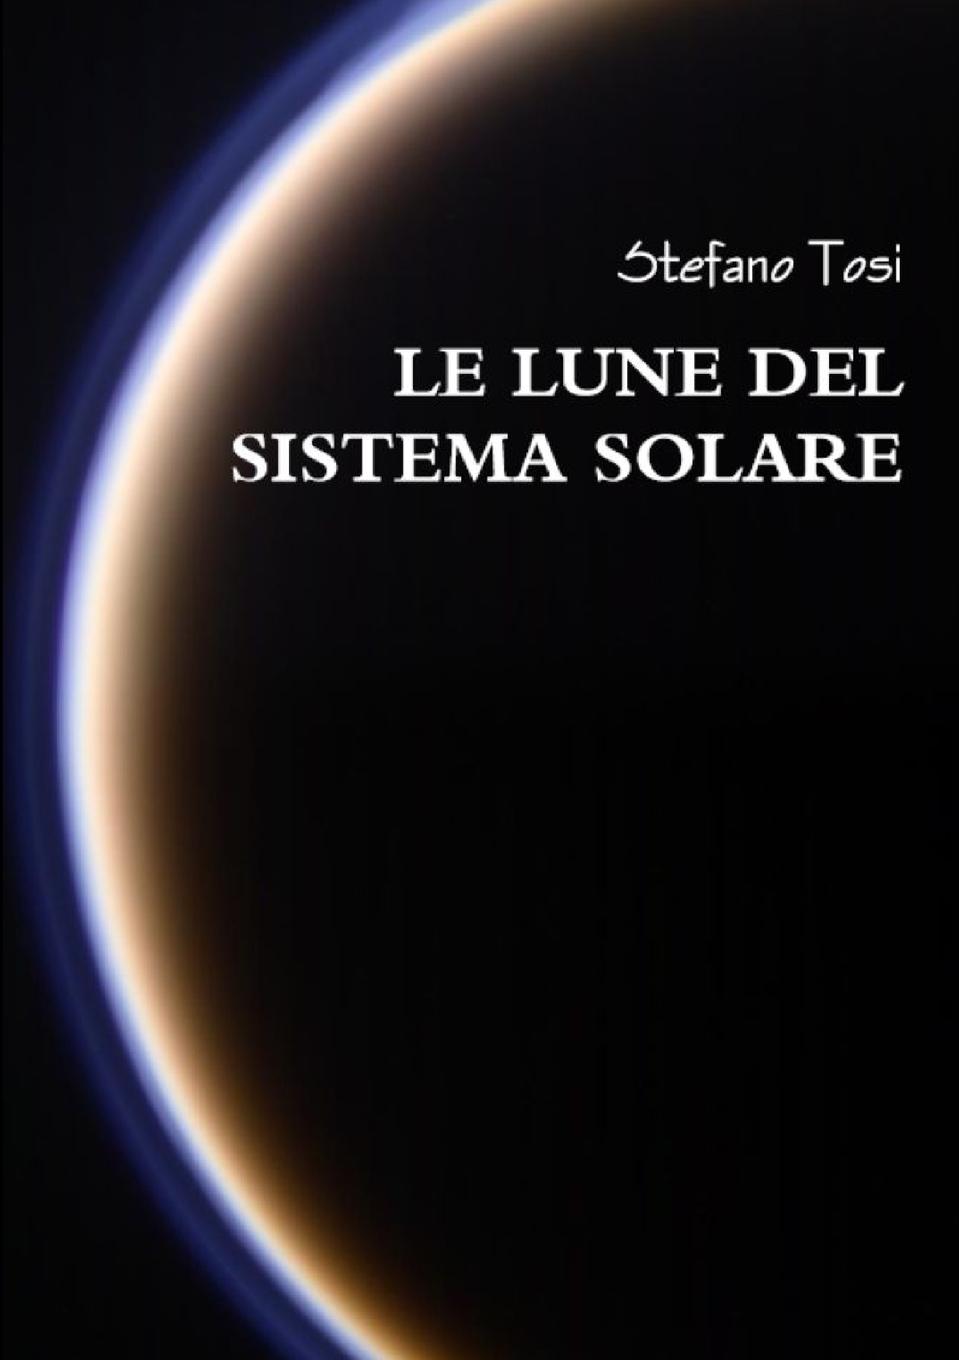 Stefano Tosi Le lune del sistema solare